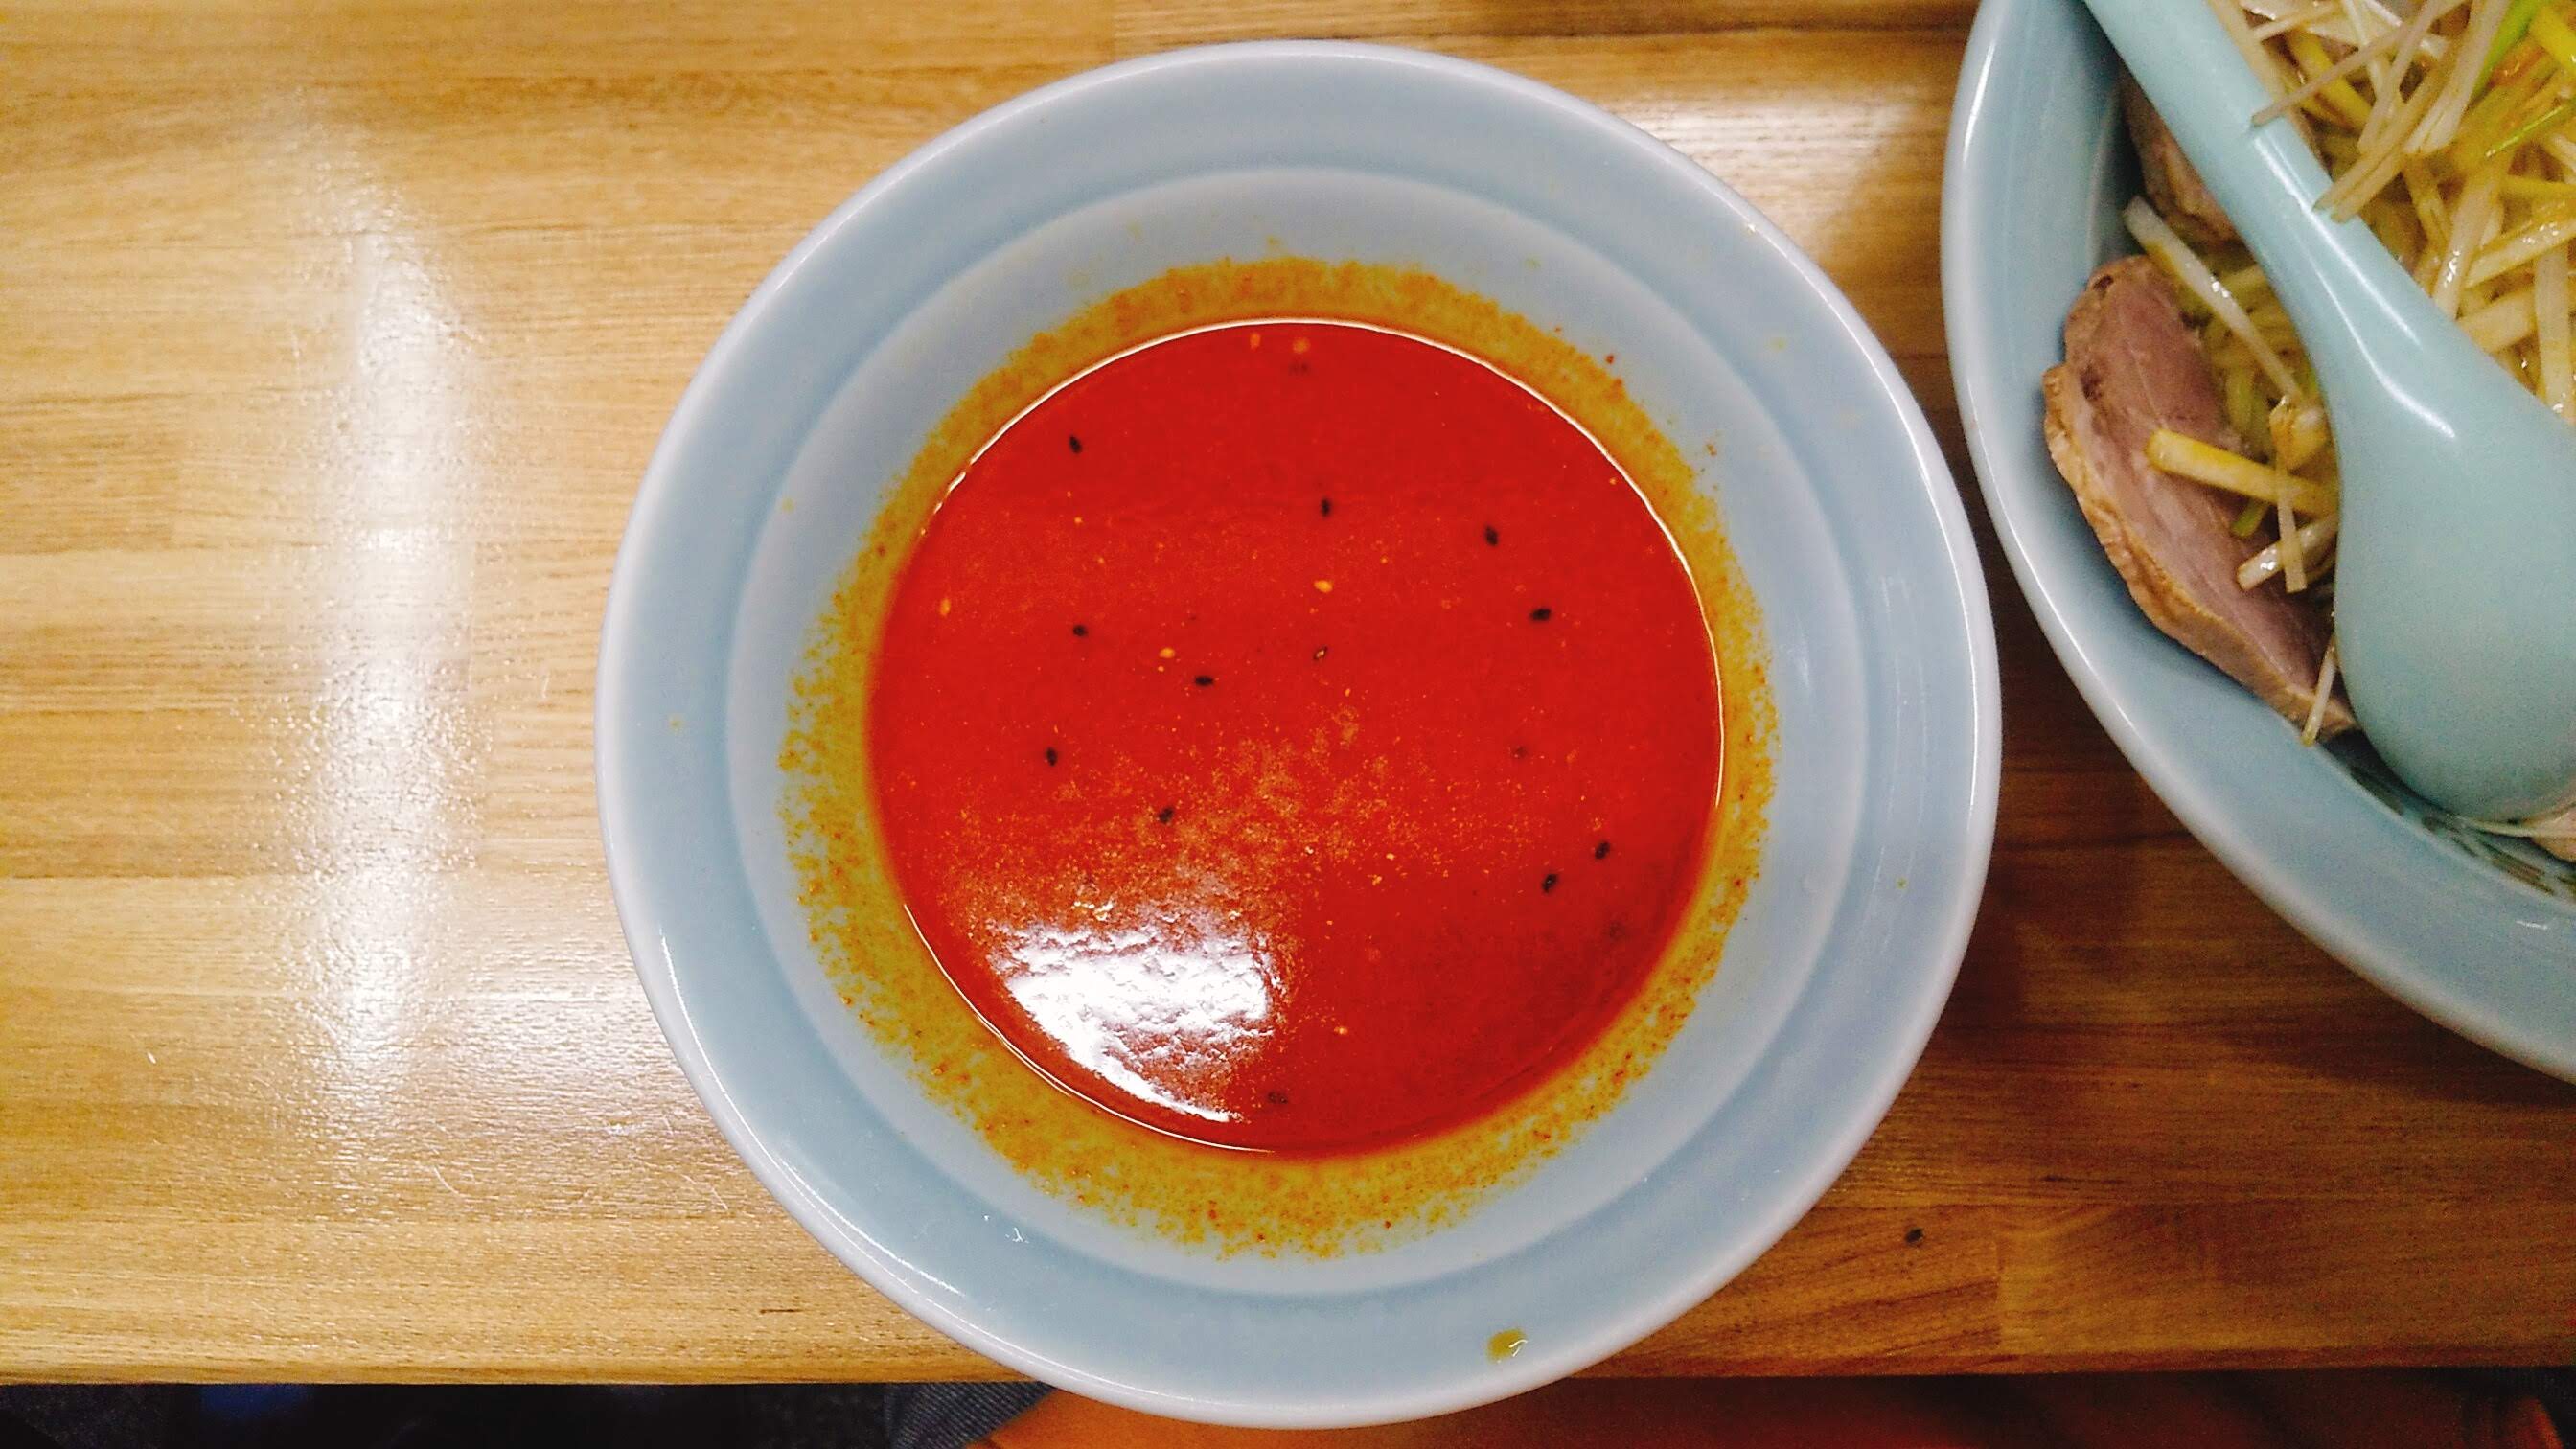 ラーメンショップ堀切の地獄ネギチャーシューつけ麺のつけ汁の写真